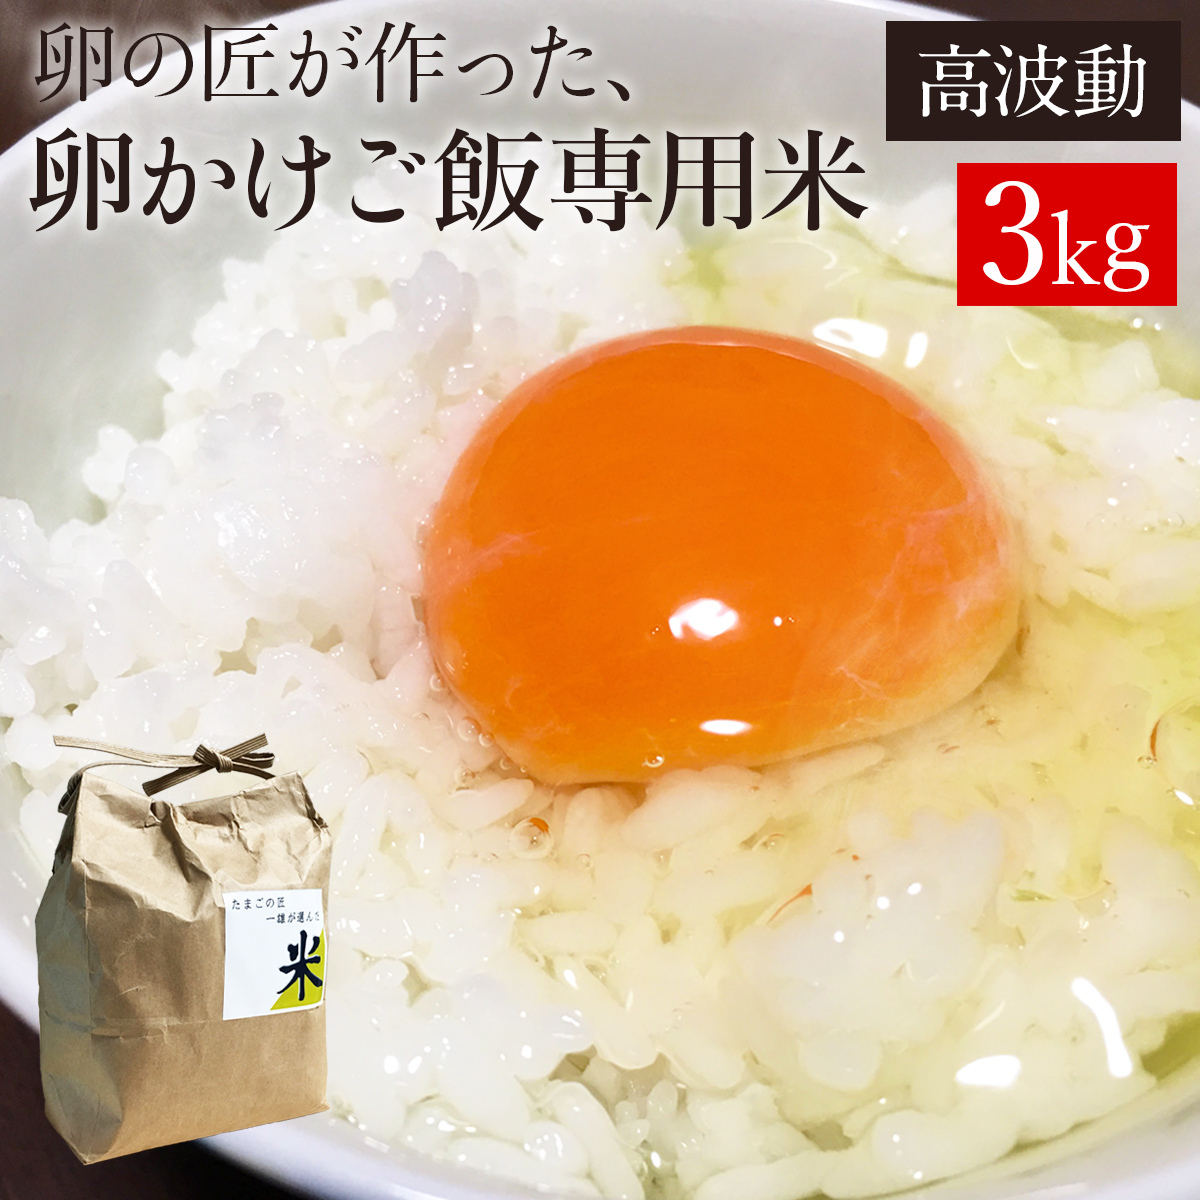 お米 卵かけご飯専用米3kg 高波動米 卵の匠が追求した卵かけご飯に合うお米 青森県産 白米 米